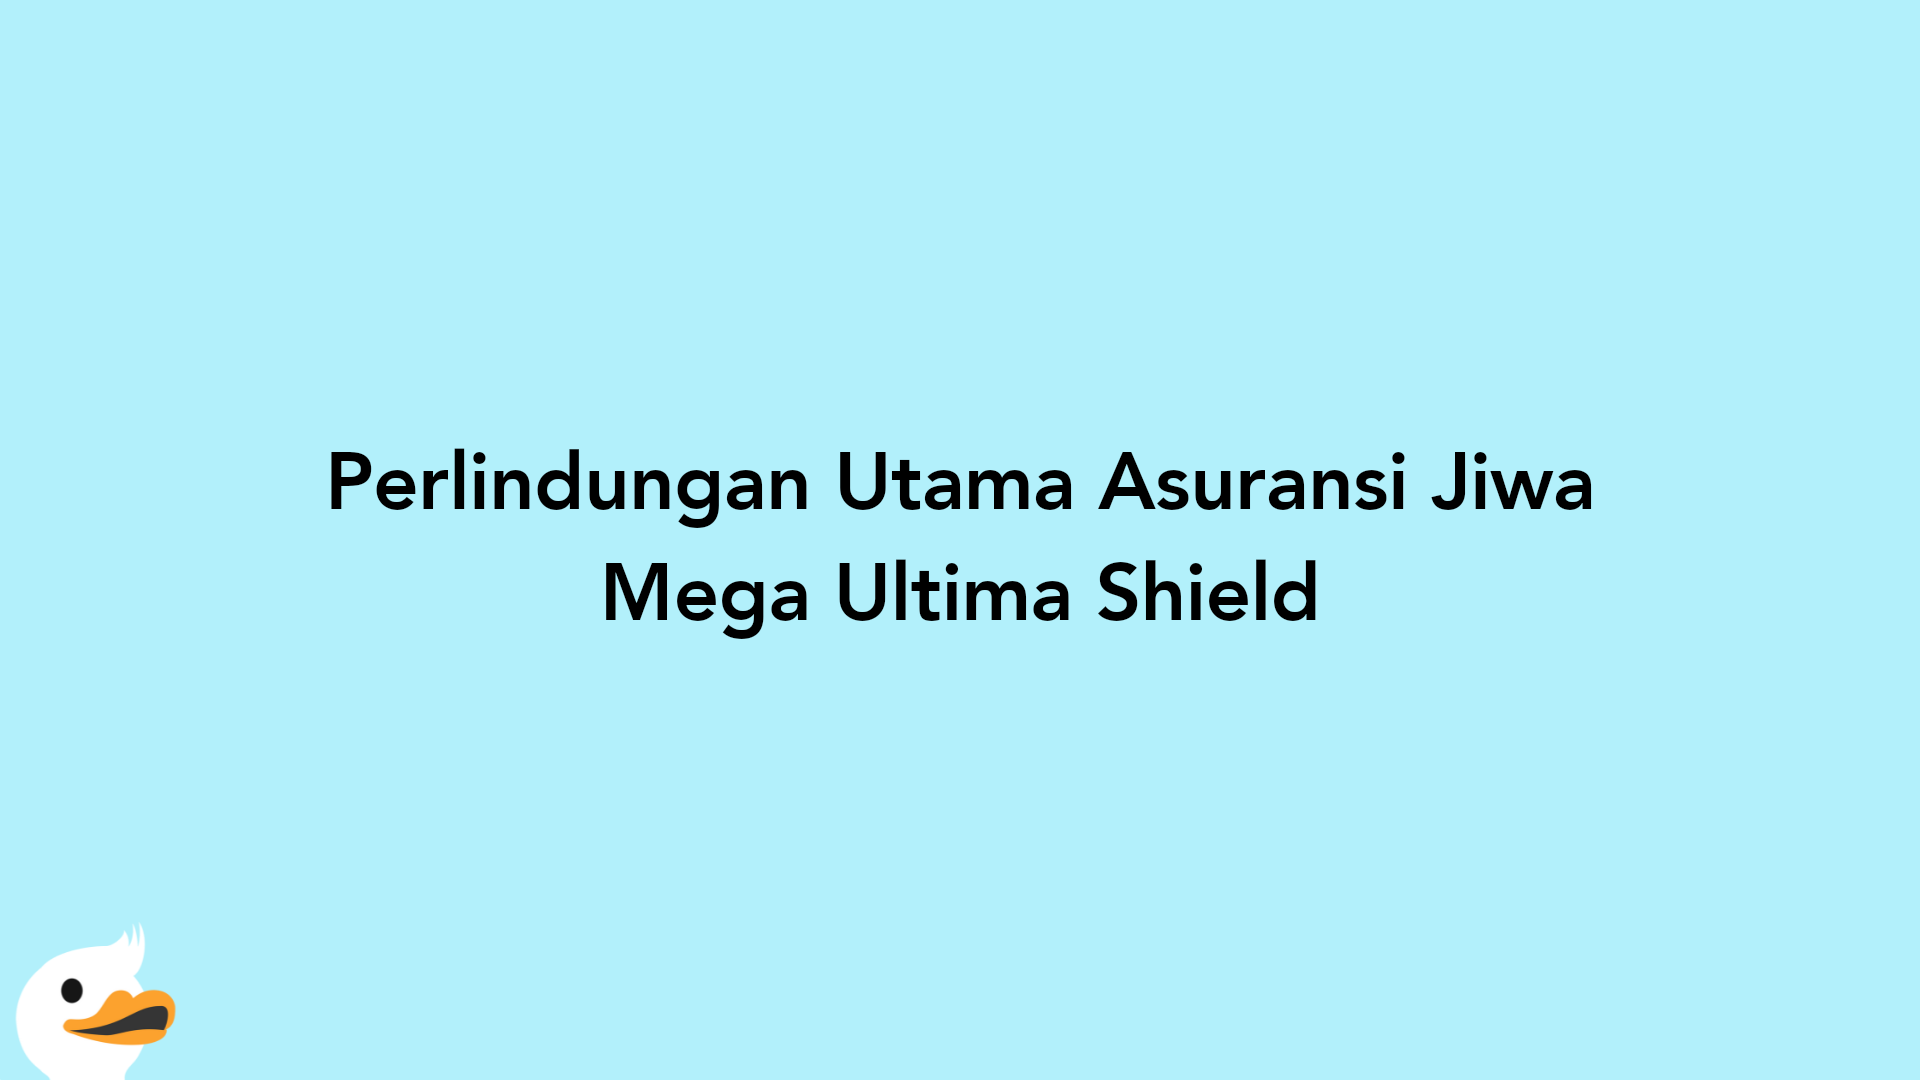 Perlindungan Utama Asuransi Jiwa Mega Ultima Shield